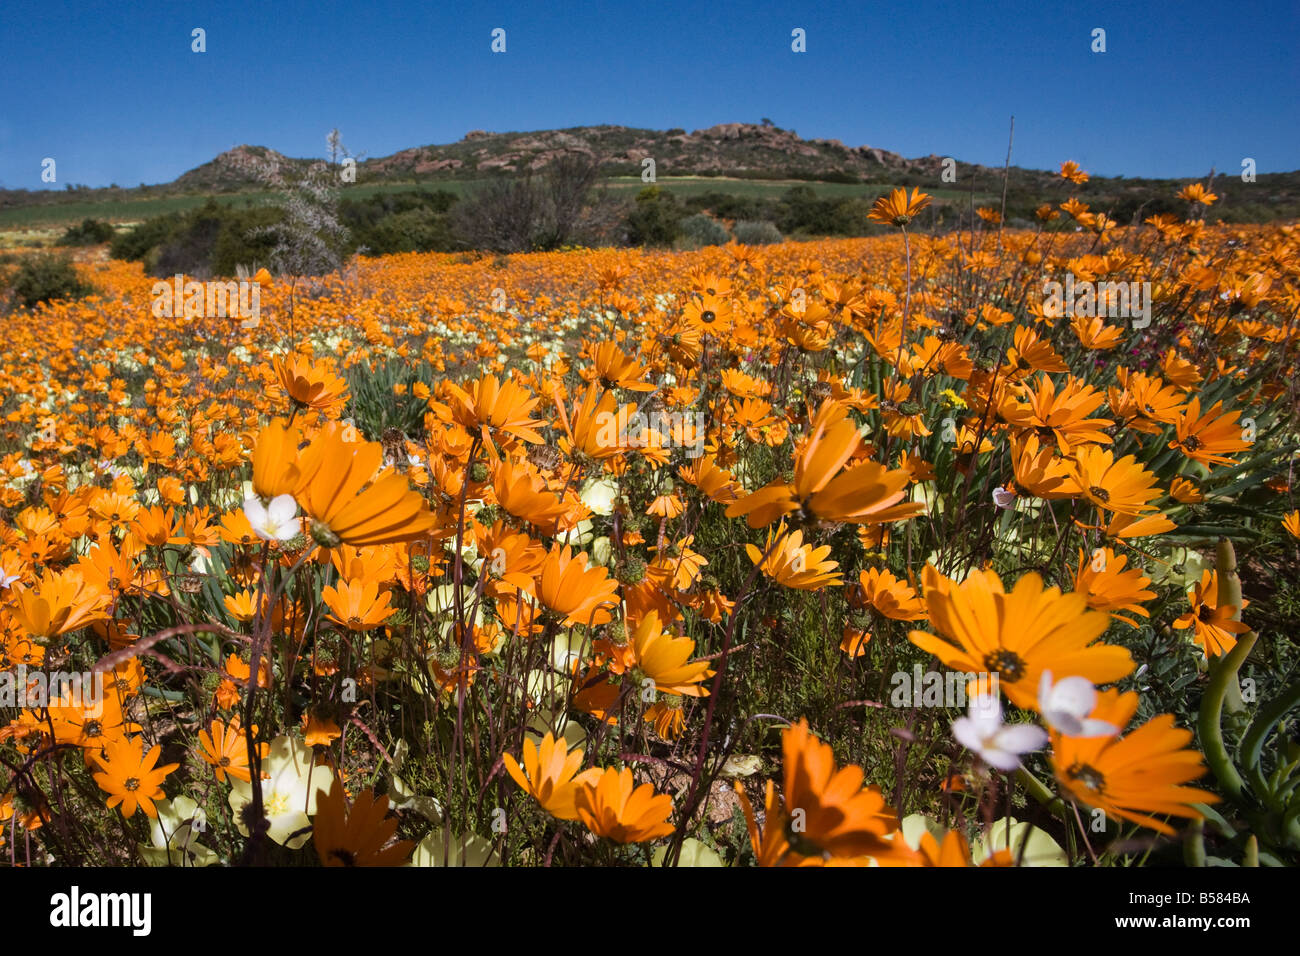 Namaqualand daisies (Dimorphotheca sinuata), Namaqualand National Park, South Africa, Africa Stock Photo